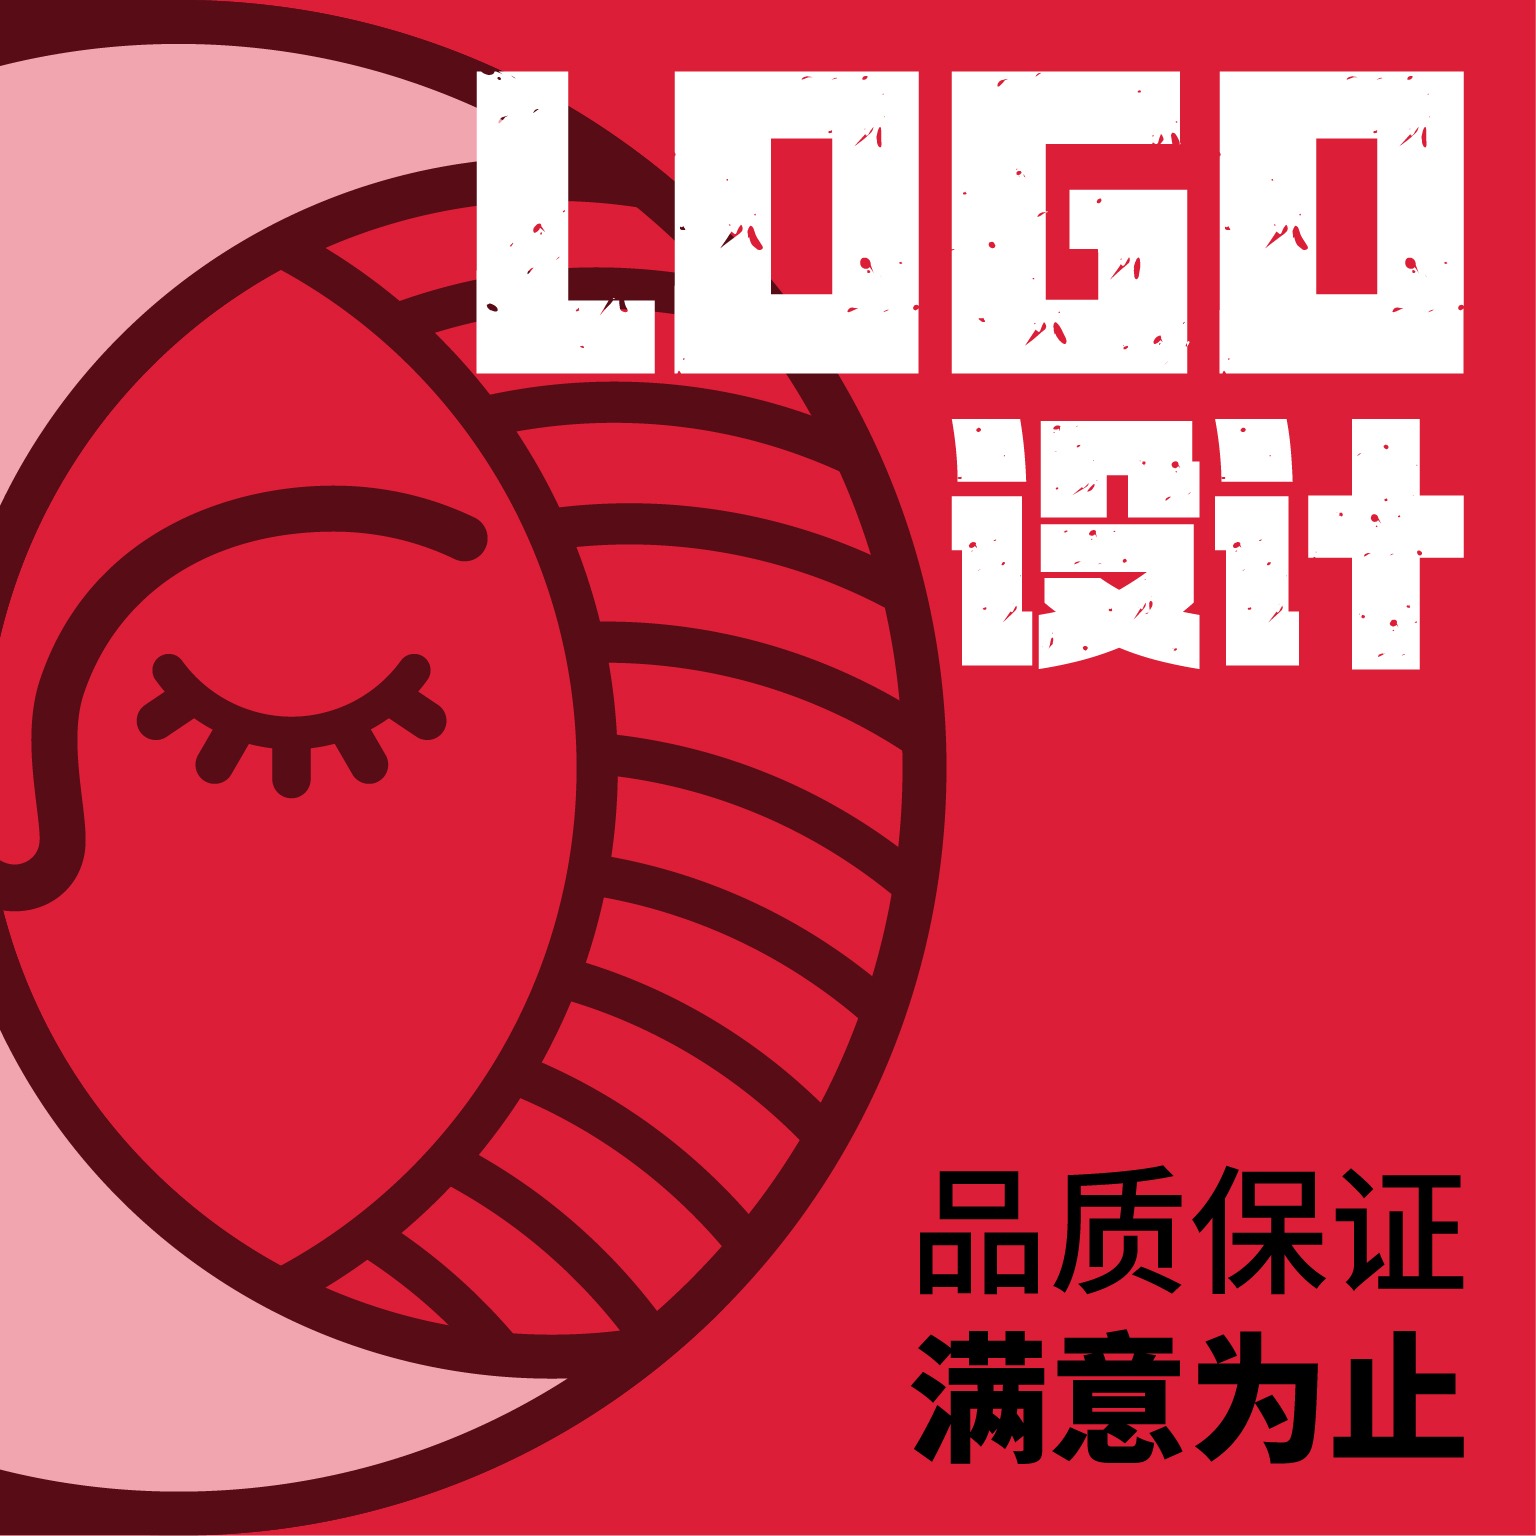 企业公司品牌logo设计原创好看标志商标LOGO图标平面设计